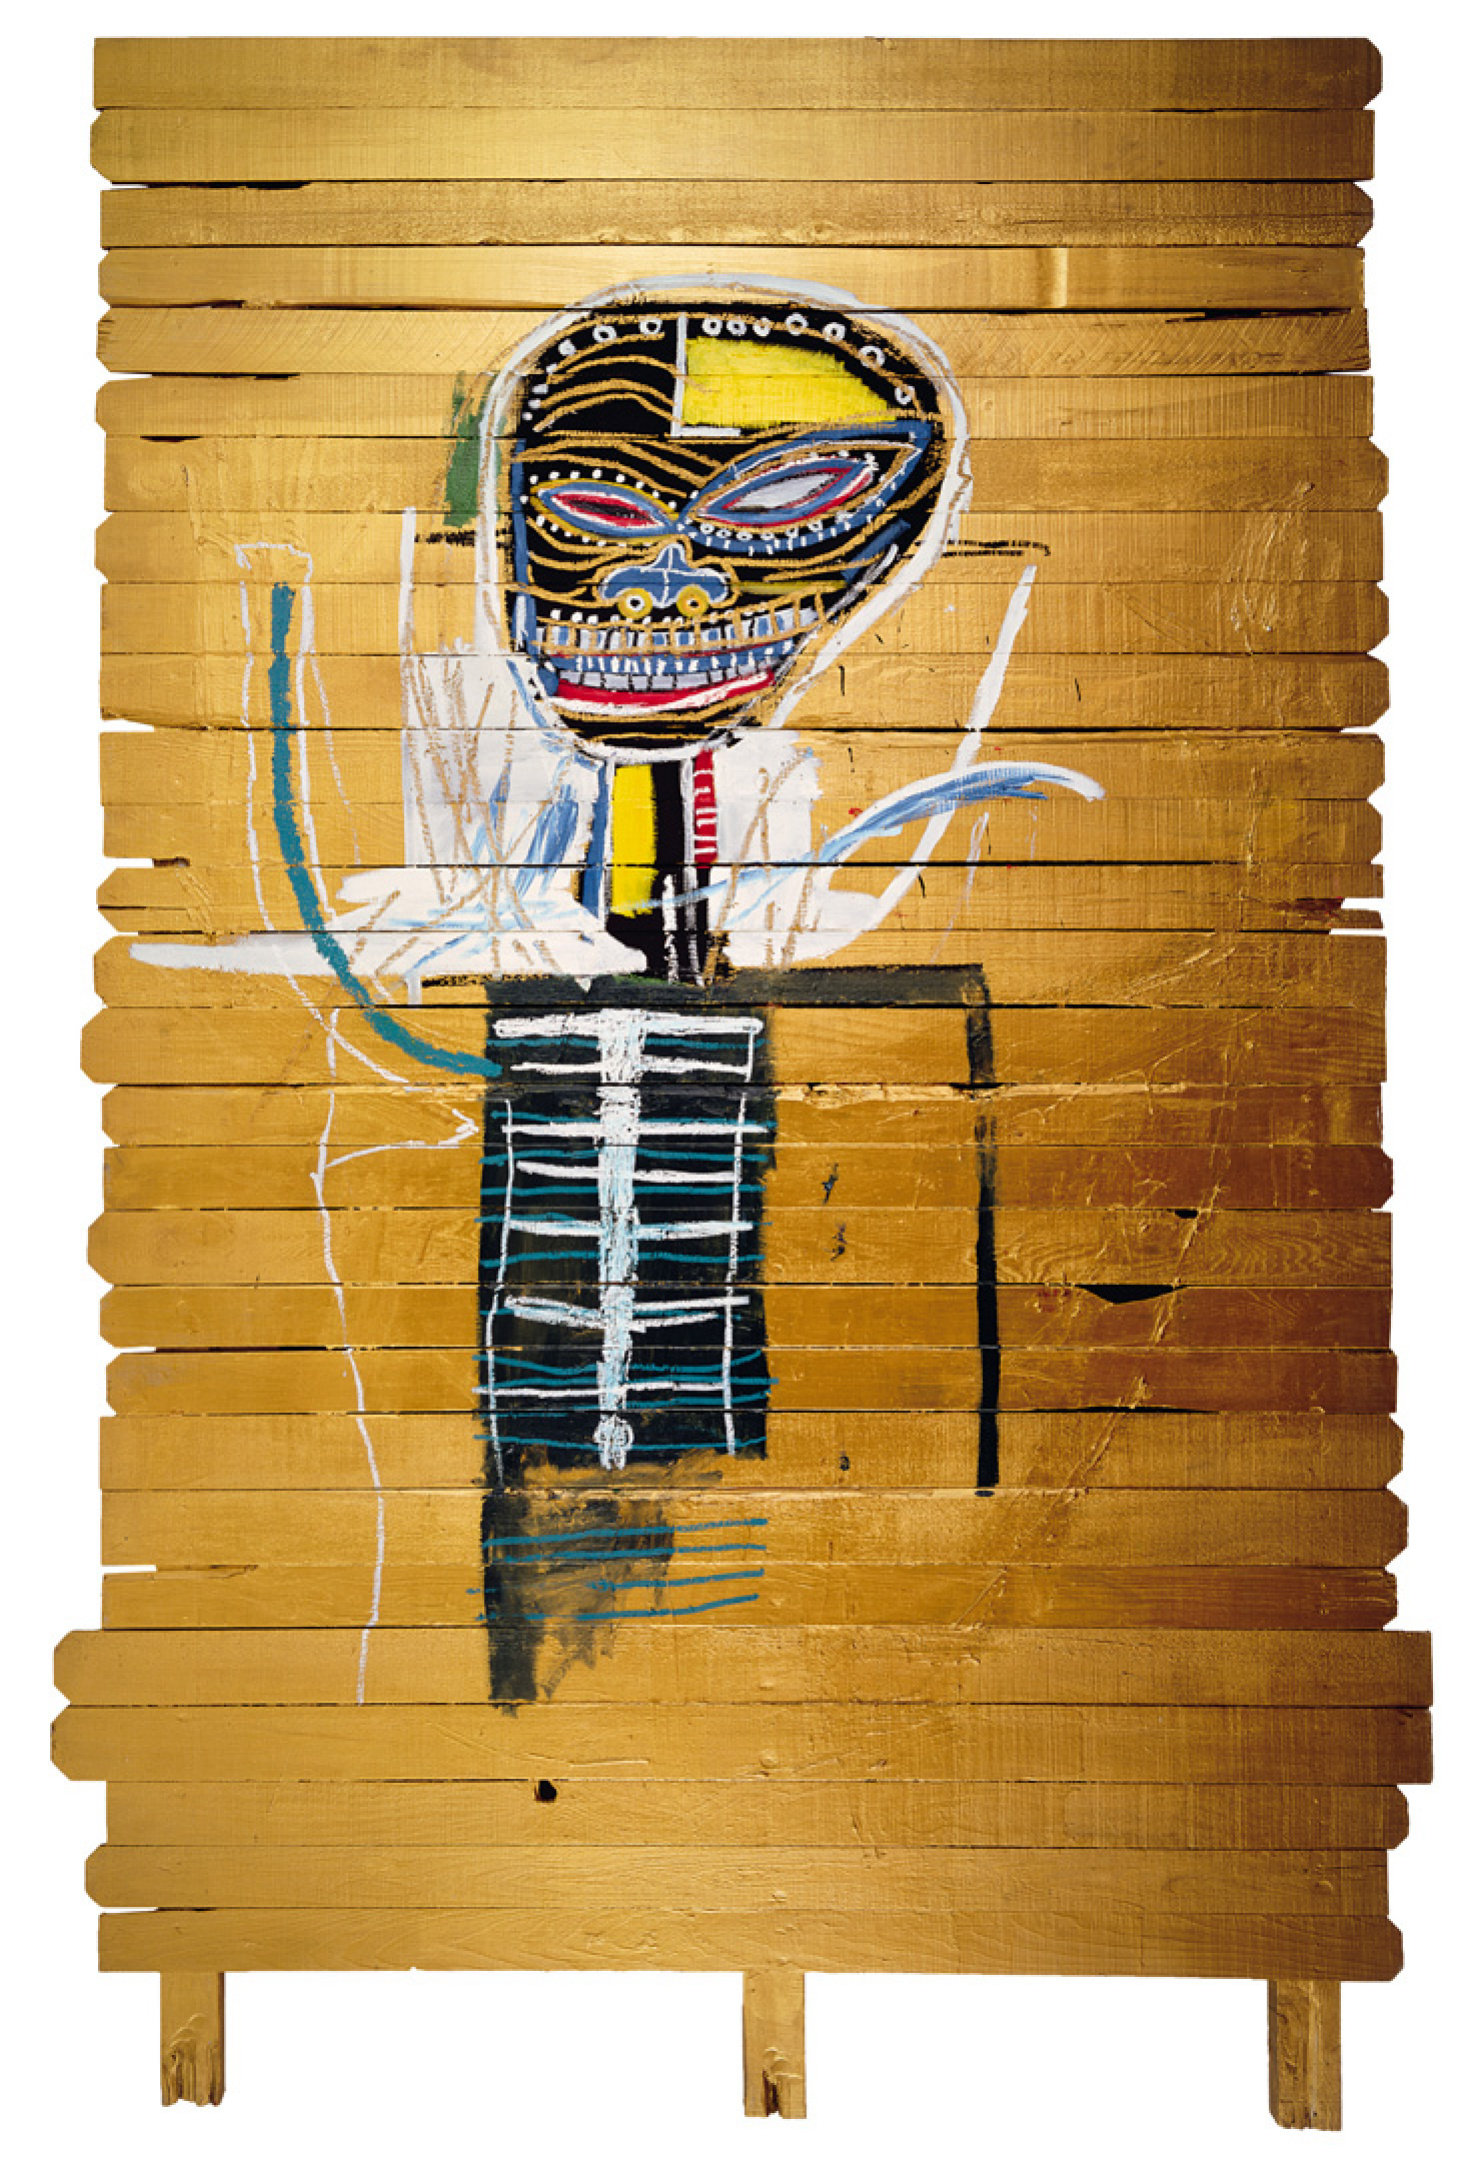 Gold (Золото), 1984. Жан-Мишель Баския (Jean-Michel Basquiat) - американский художник. Неоэкспрессионизм